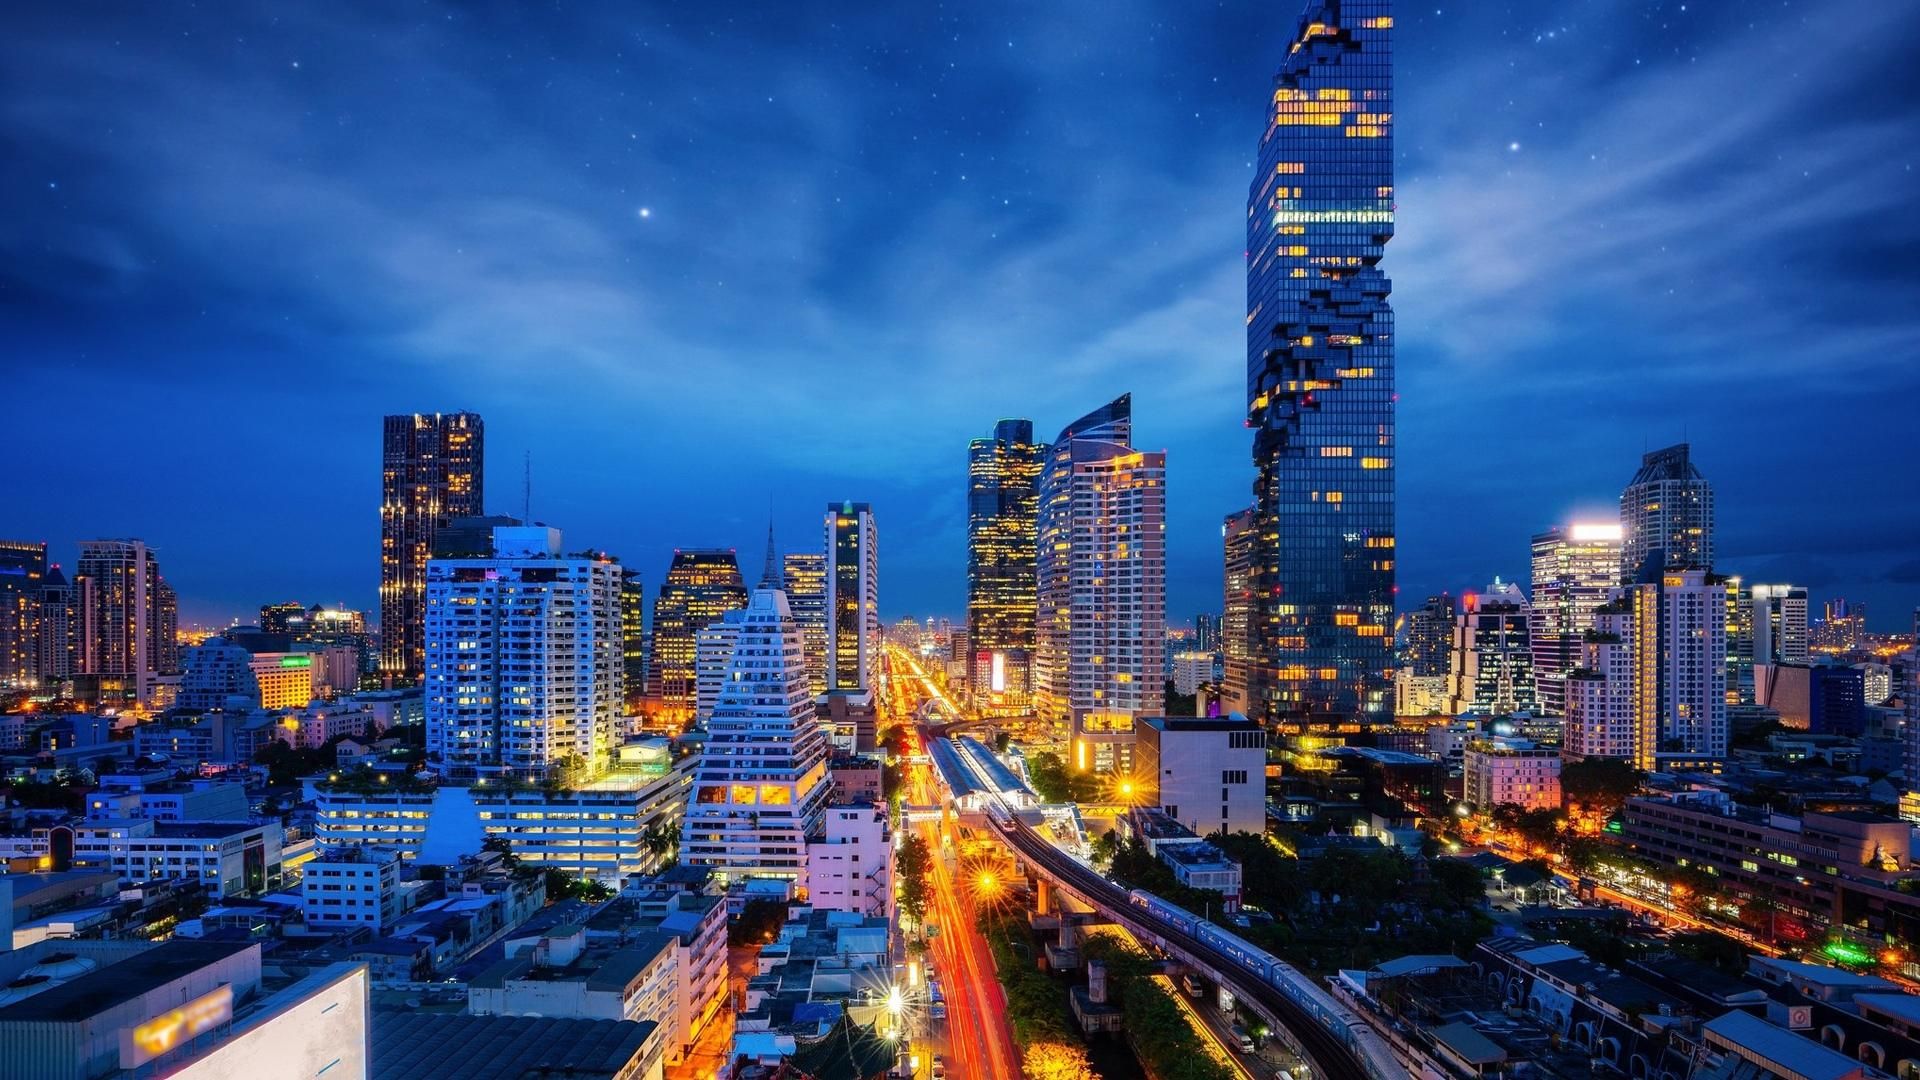 泰国曼谷五光十色霓虹夜景高清桌面壁纸 亿图全景图库手机版